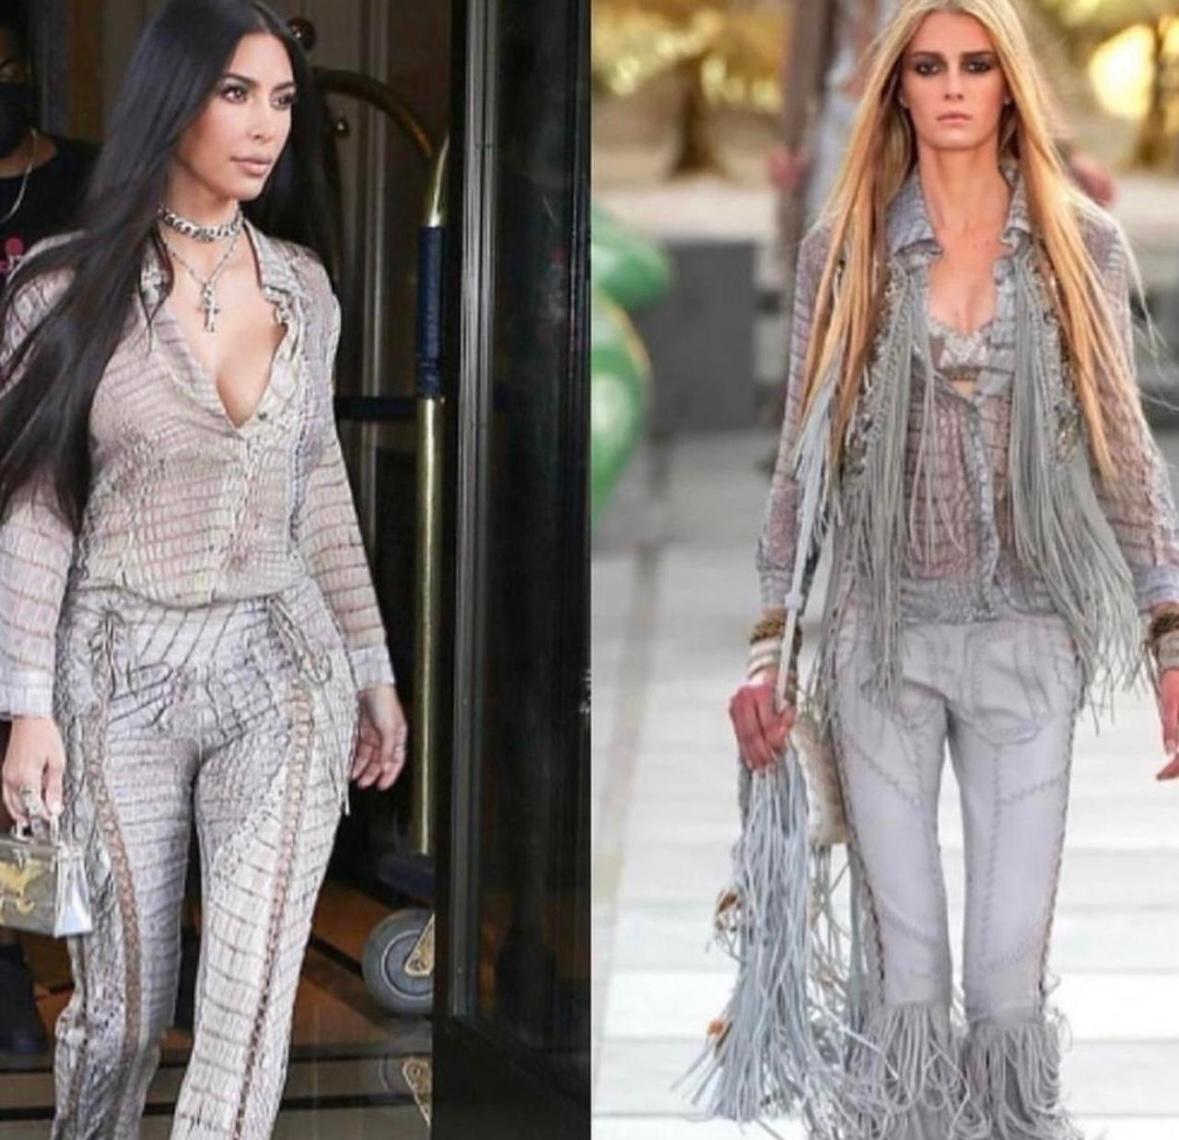 Wie bei Kim Kardashian gesehen 

Roberto Cavalli Seidenbluse mit Lederschnürung 

Größe 44. Passt eher wie eine S/M

Guter Vintage-Zustand. Marke Tag halb freistehend

Aus der Laufstegkollektion 2011